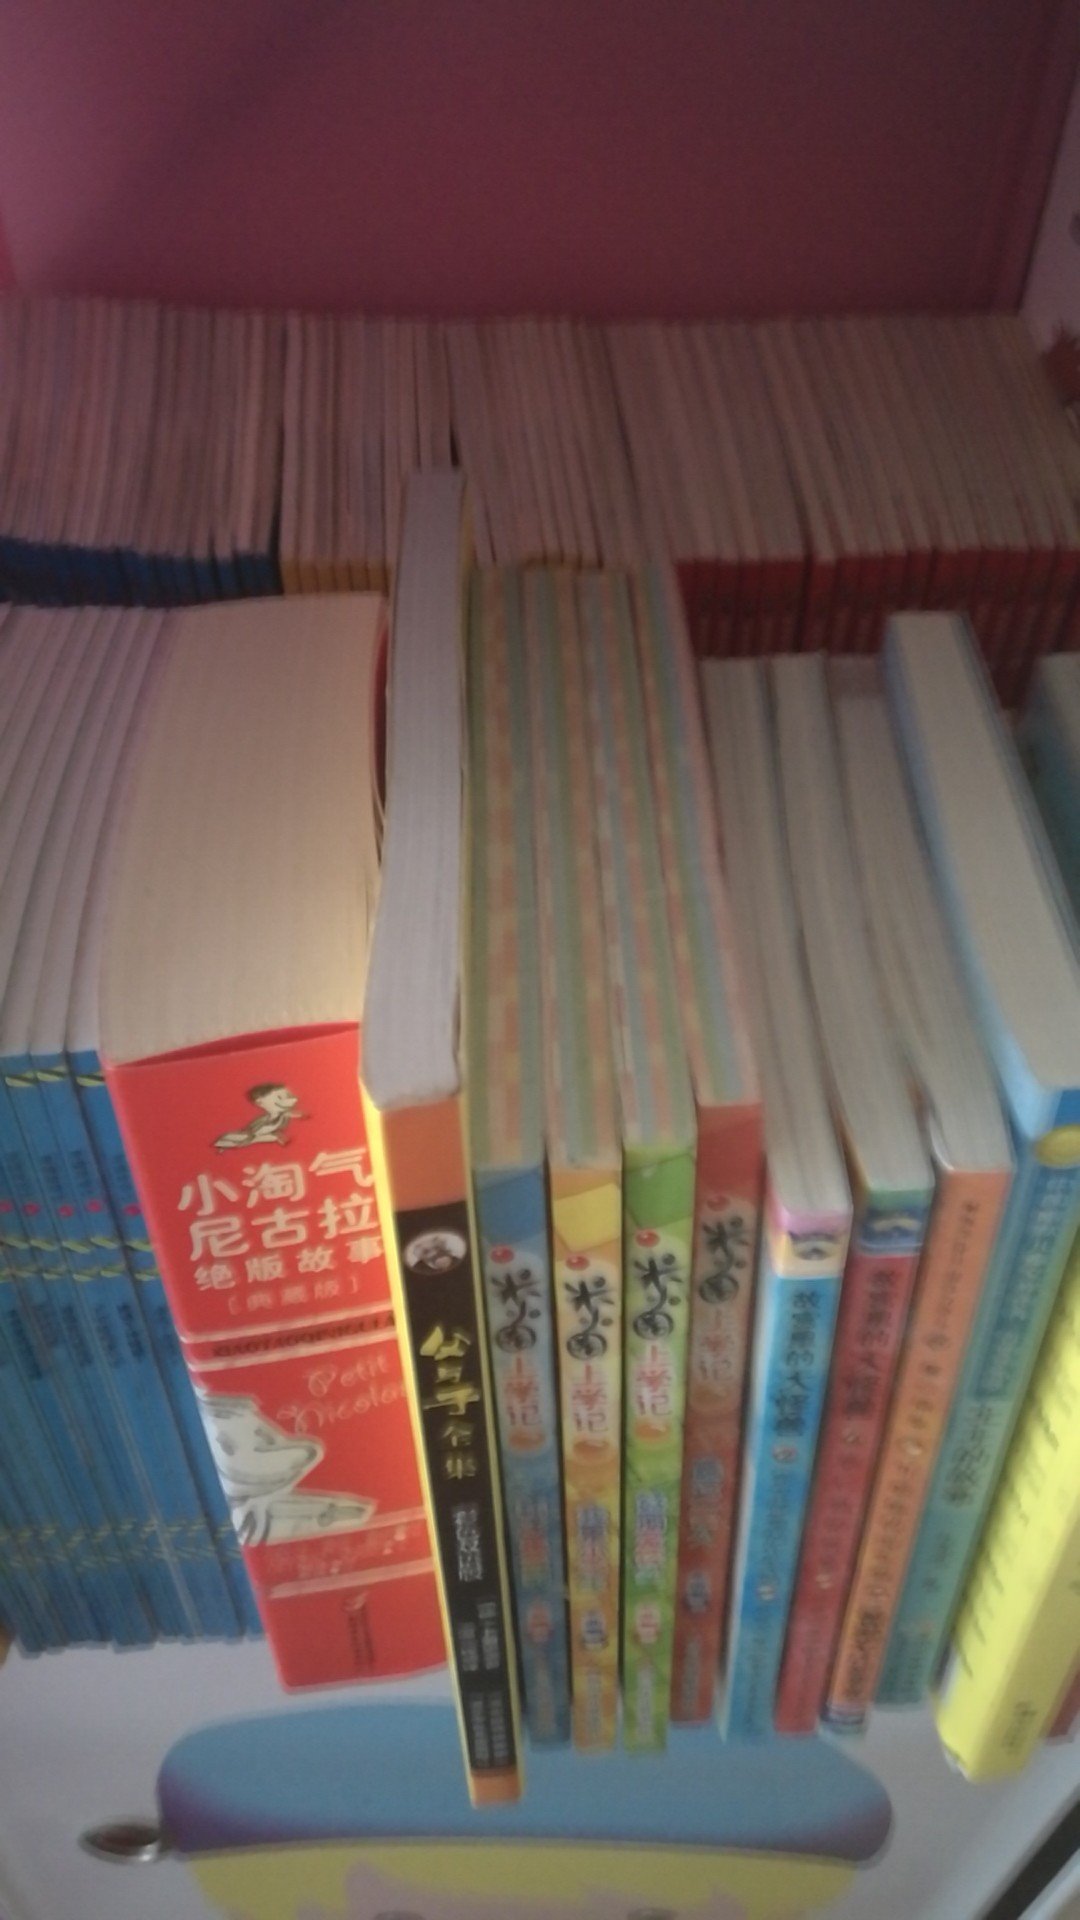 中英文慢慢收的一套好书，女孩也爱看